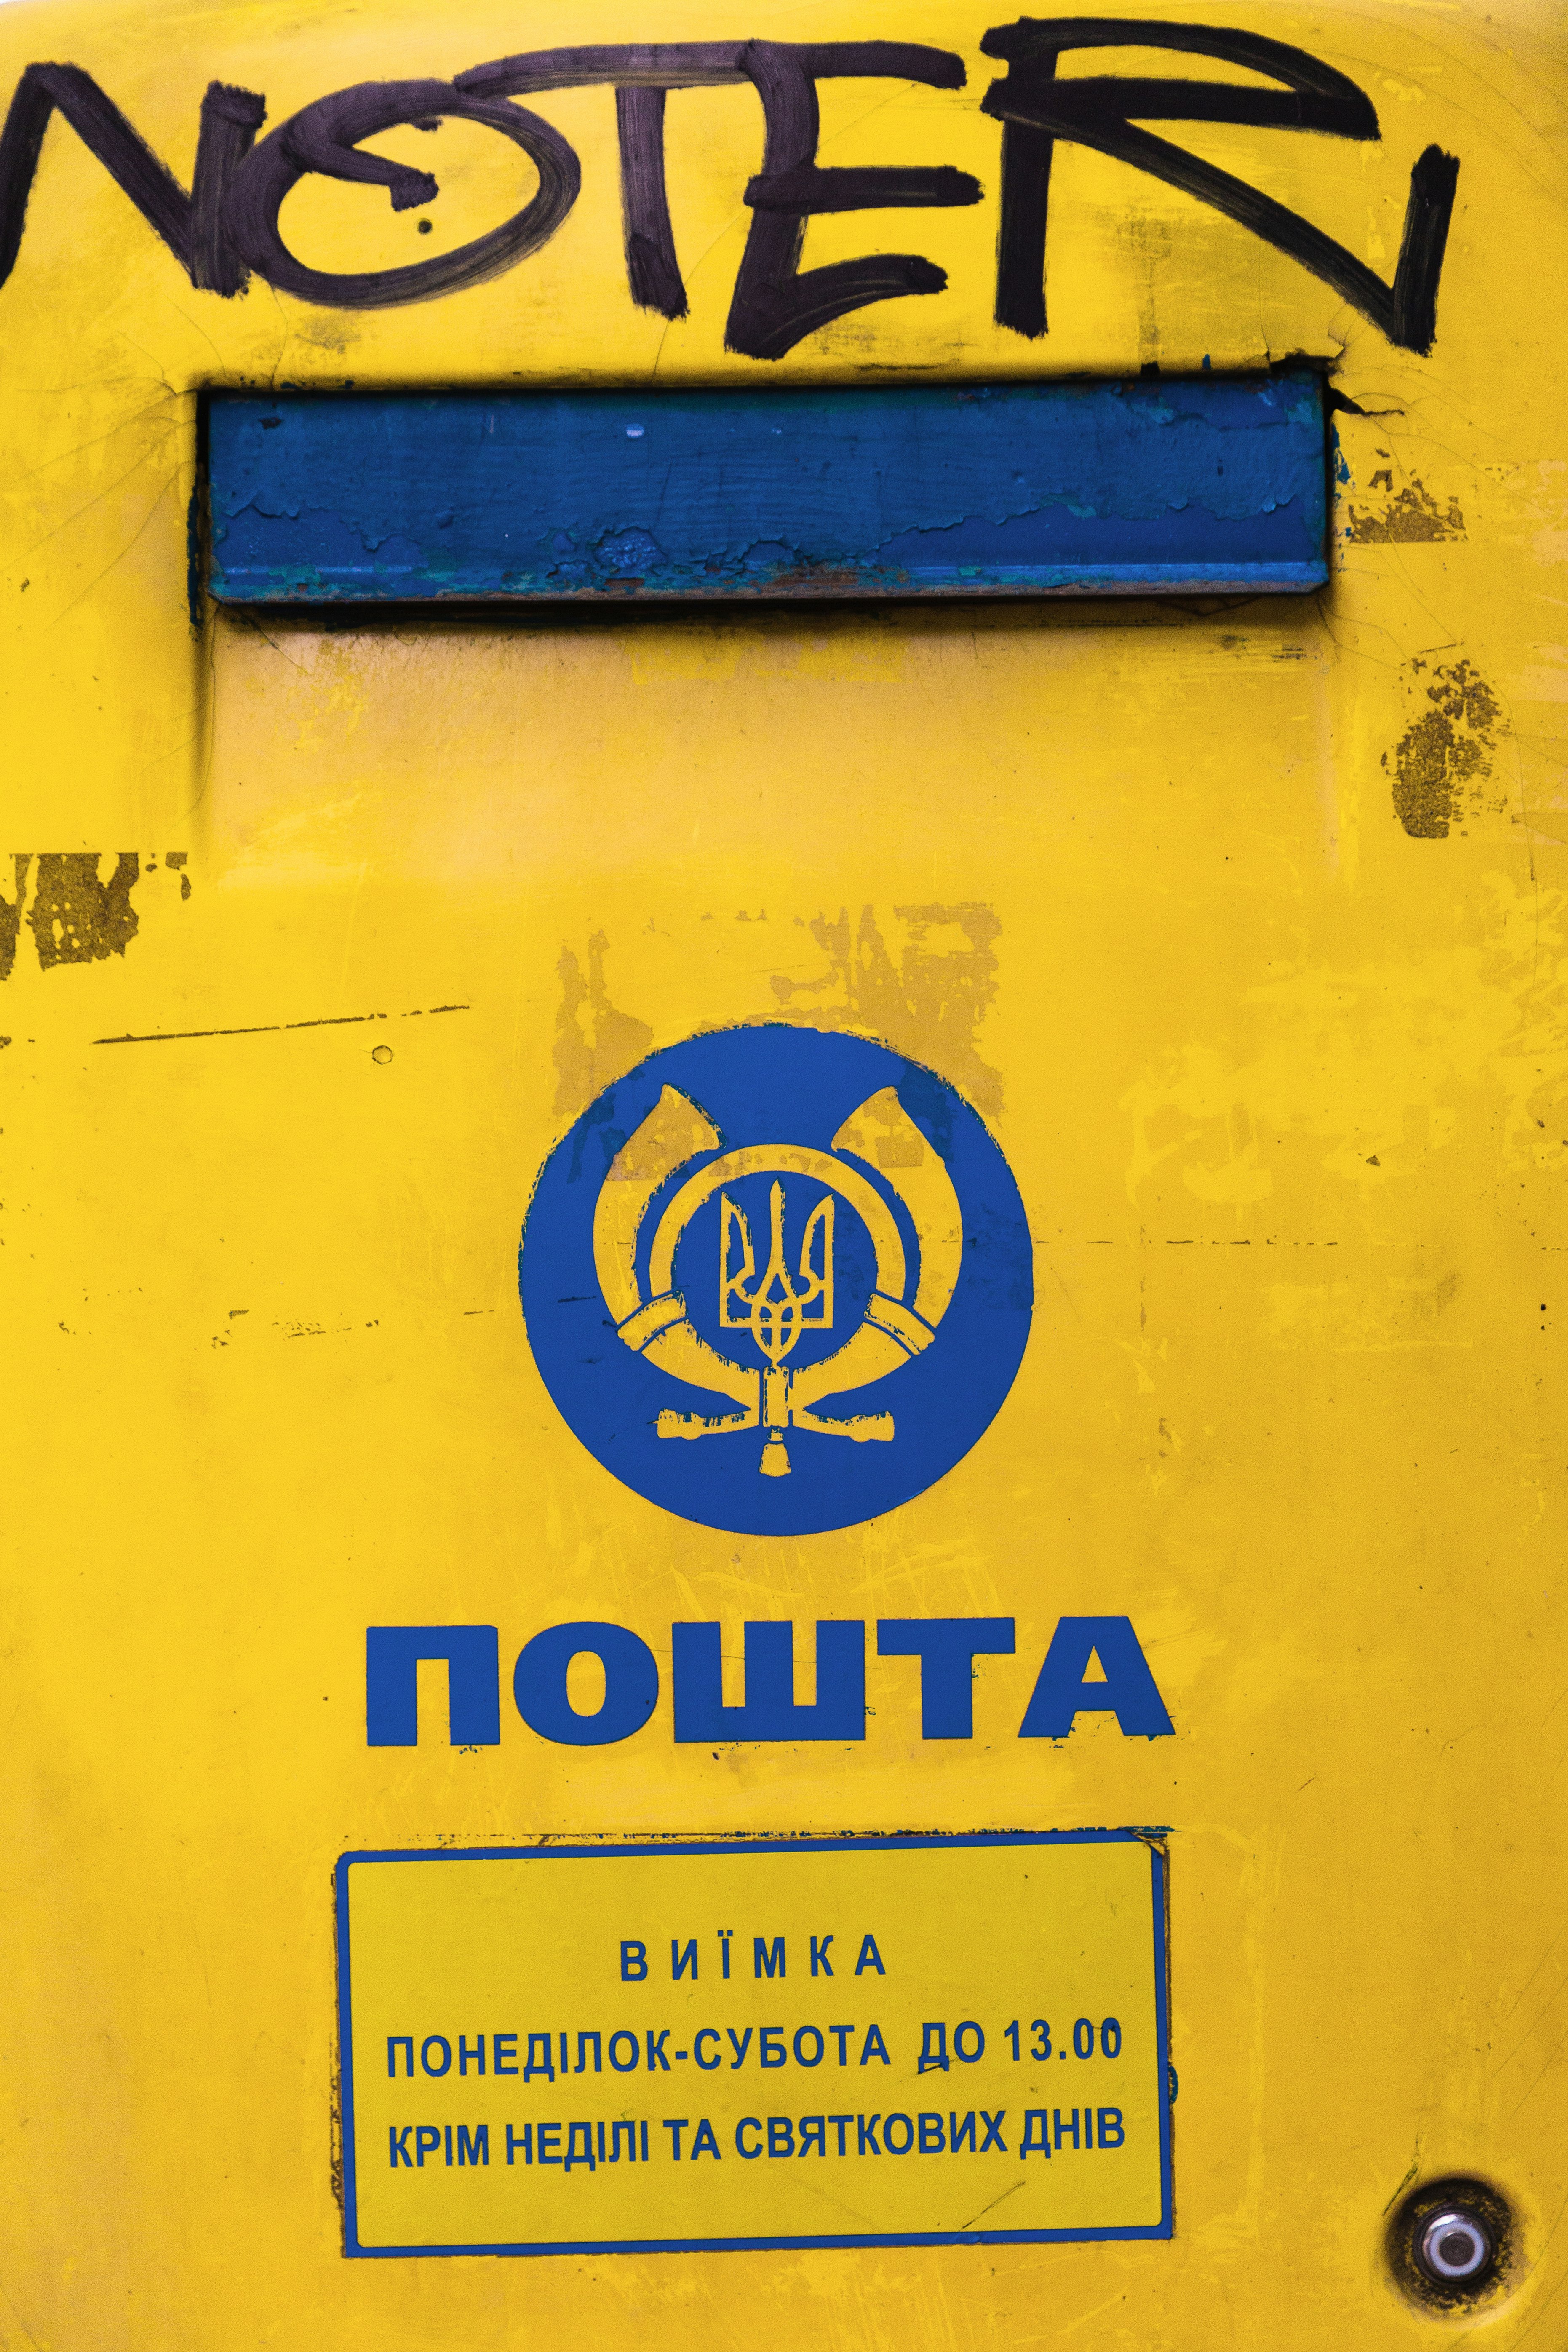 Nowta logo